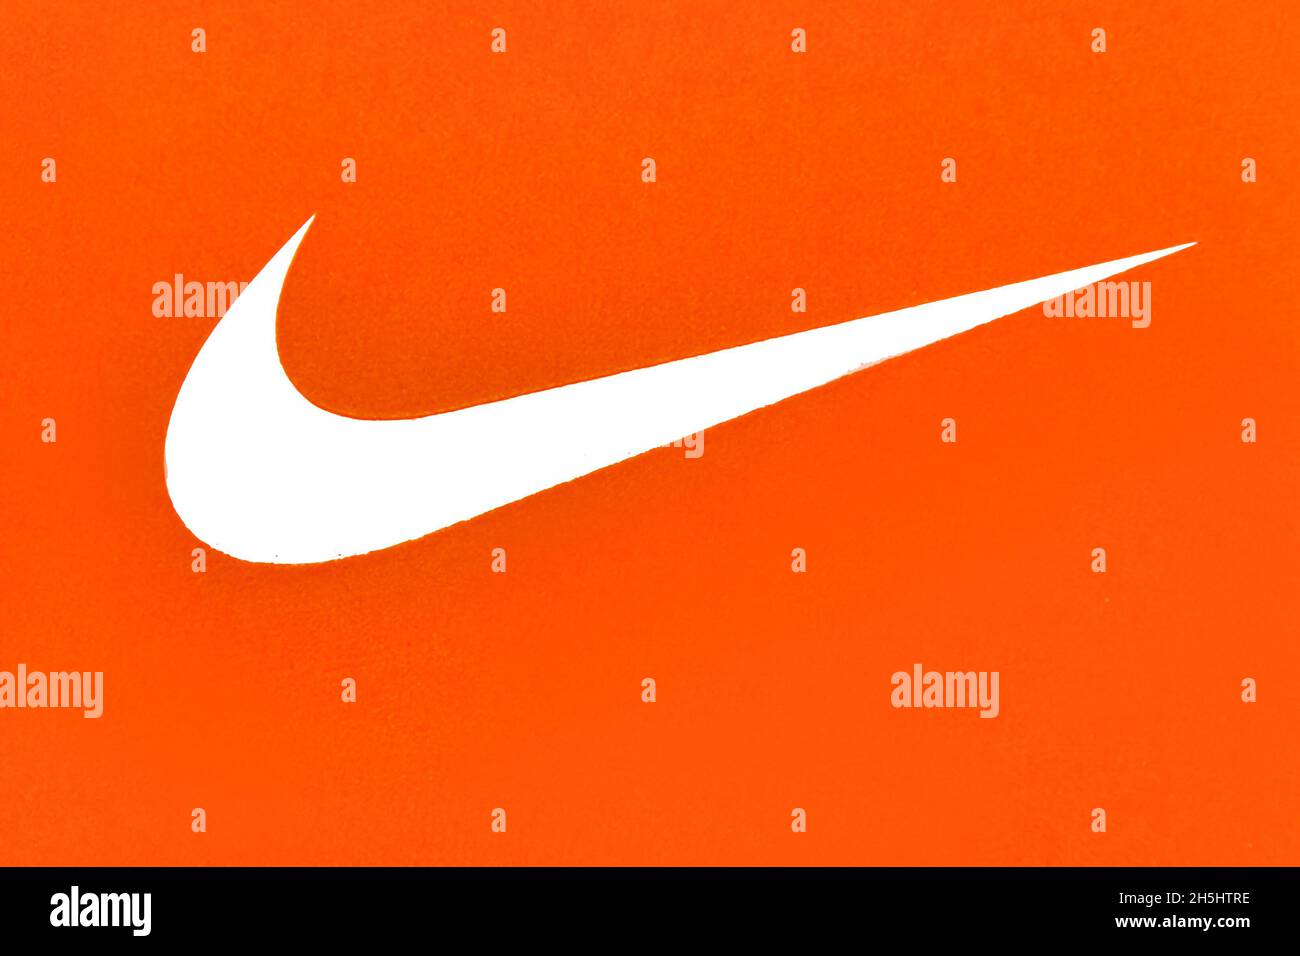 Der Swoosh von Nike auf einer Schuhbox. Der Swoosh ist das Logo des  amerikanischen Sportartikeldesigners und Einzelhändlers Nike.Nov 9, 2021  Stockfotografie - Alamy